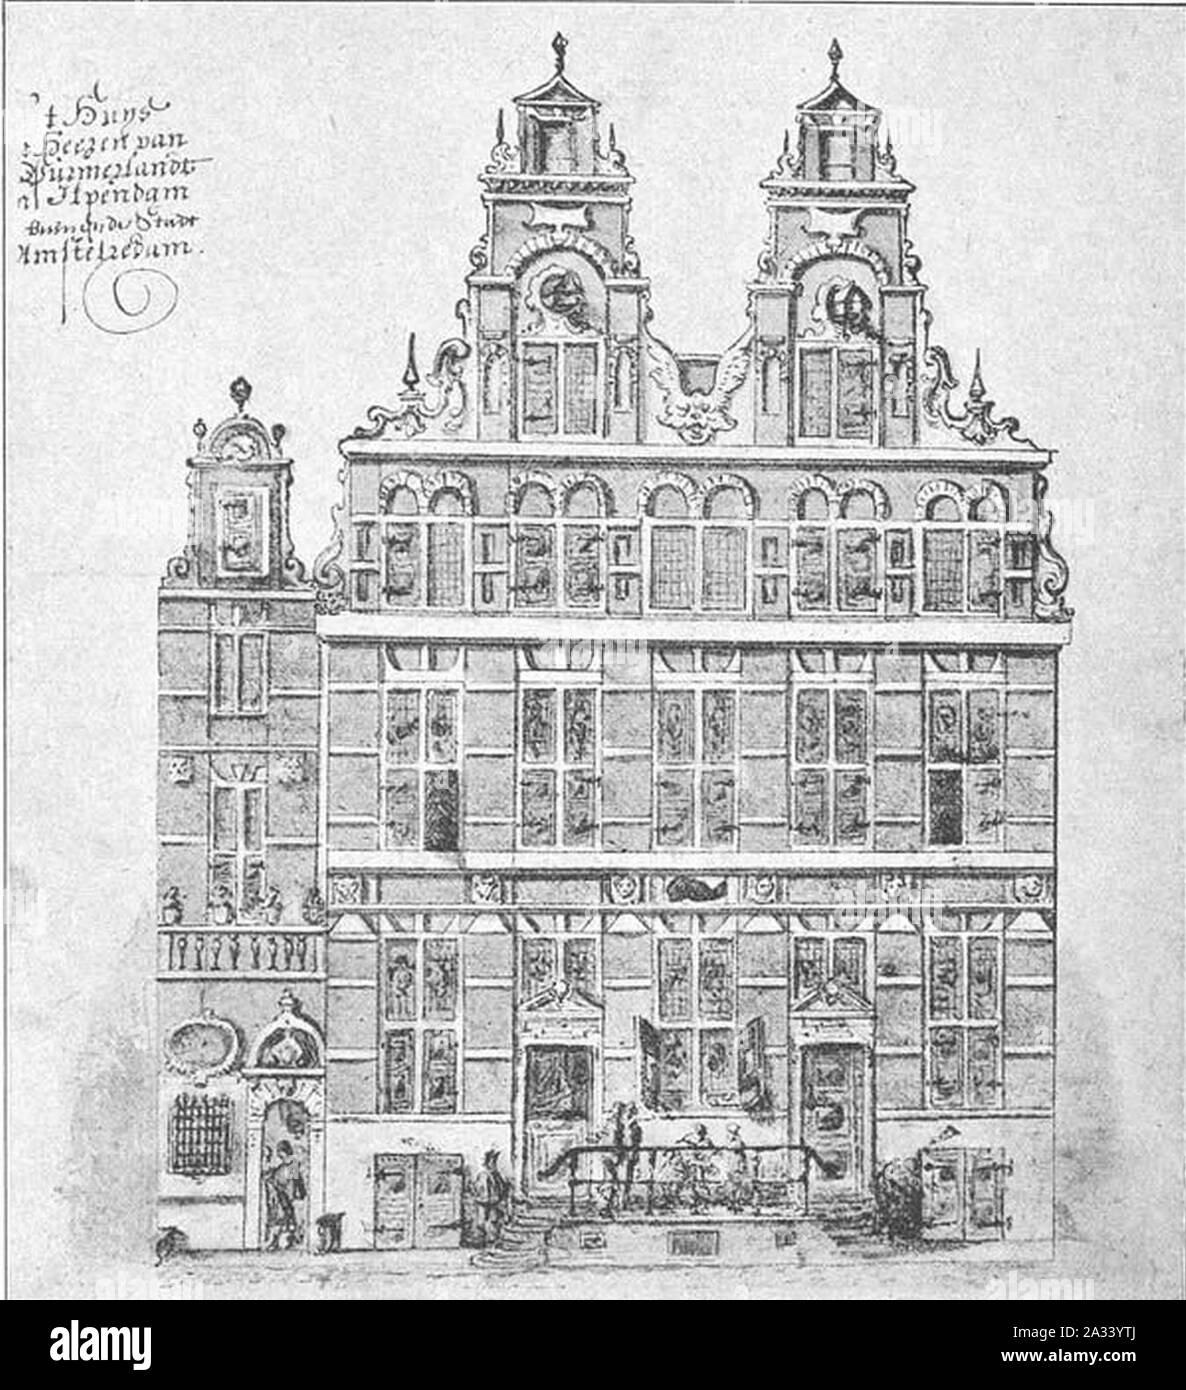 Family Album von Frans Banninck Cocq, Zeichnung von seinem Haus 'De Dolphijn', Singel 140-142, Amsterdam. Stockfoto